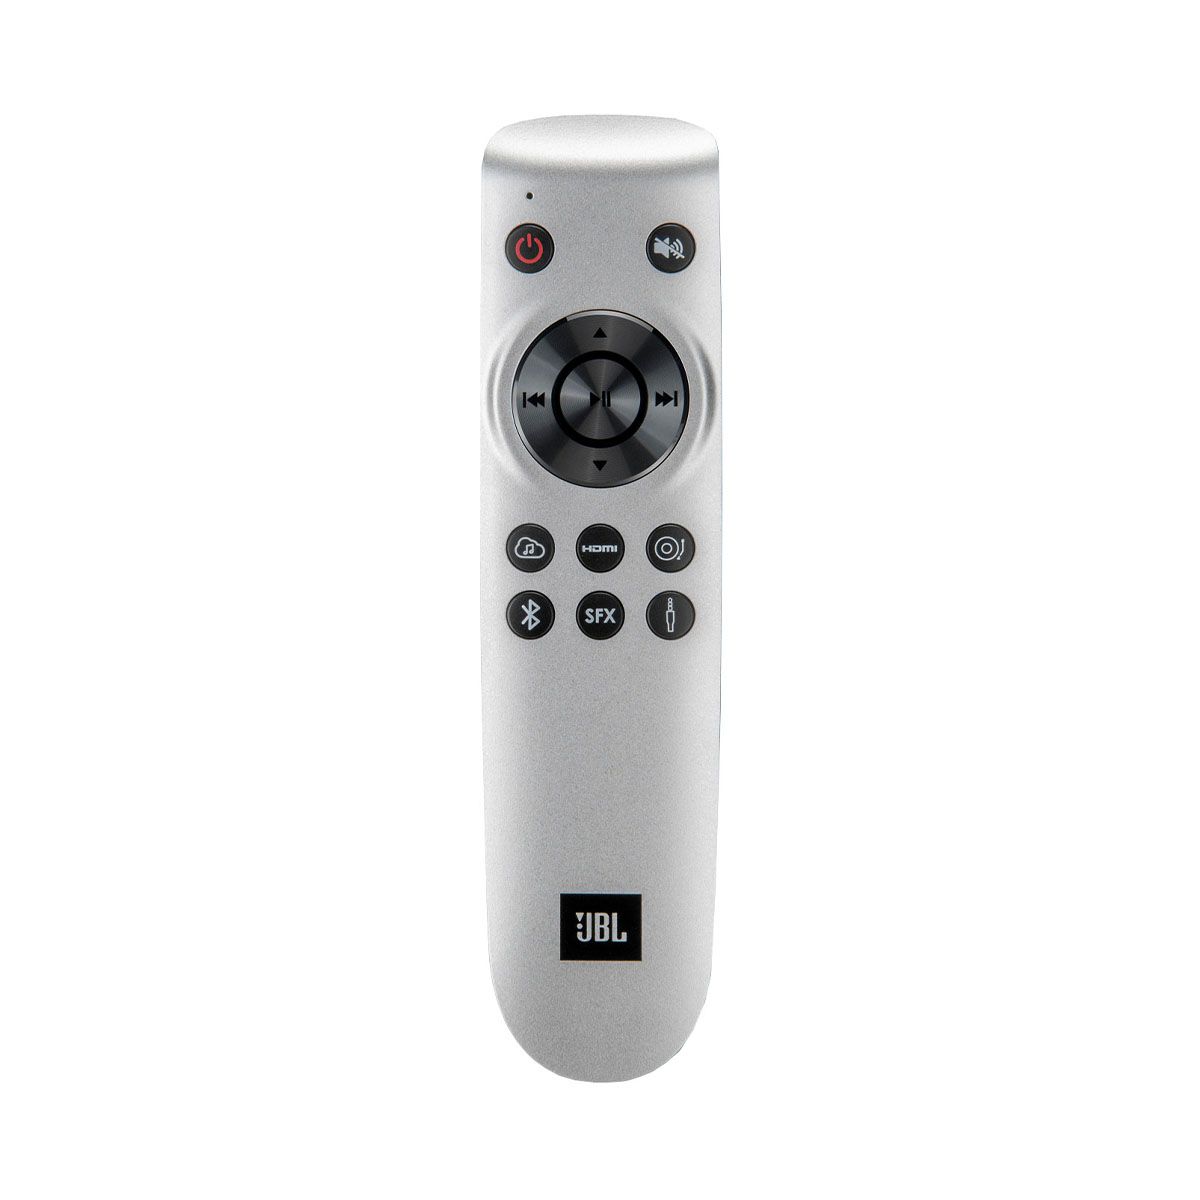 JBL L75ms Music System - Walnut remote control